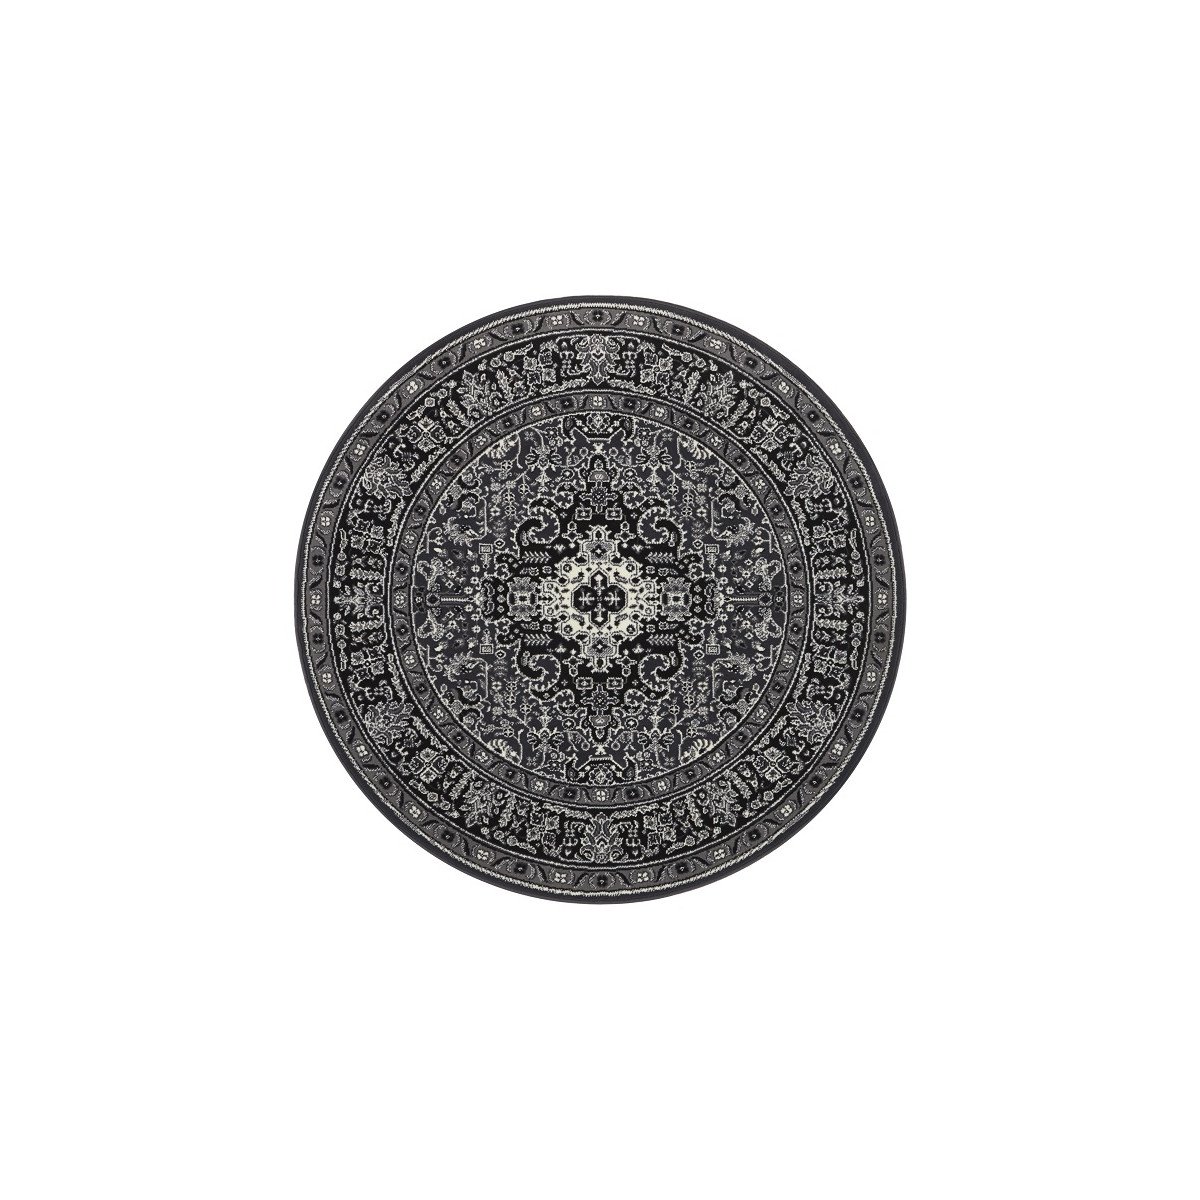 Kruhový koberec Mirkan 104436 Dark-grey